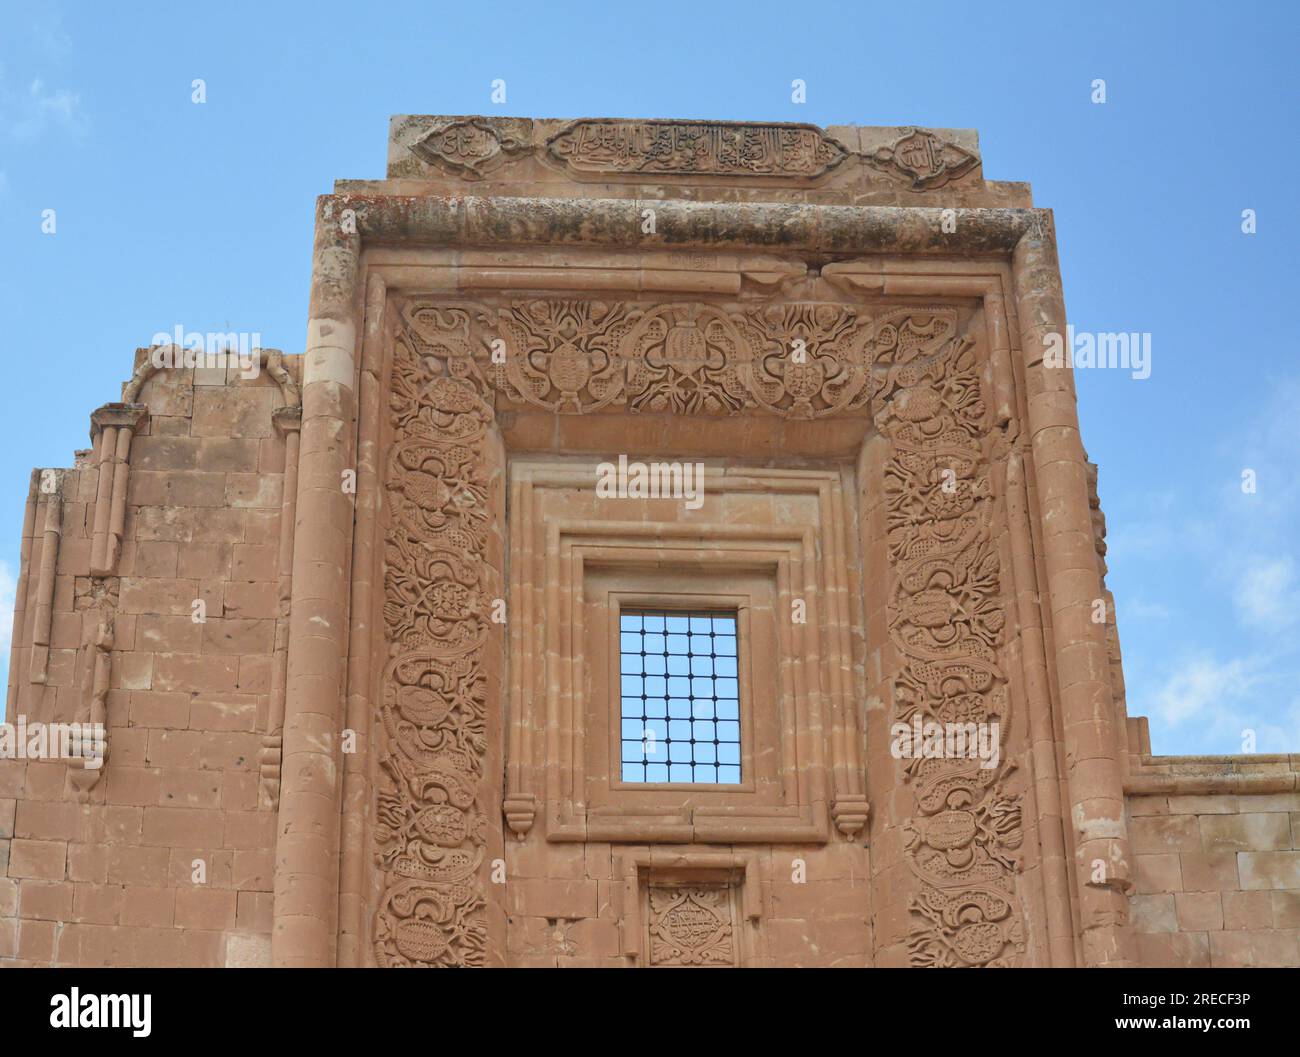 palazzo ishak pasha a dogubayazit, agri, turkiye. Decorato con arte ottomana o islamica. Scritti sul muro, versi arabi e parole islamiche. Foto Stock